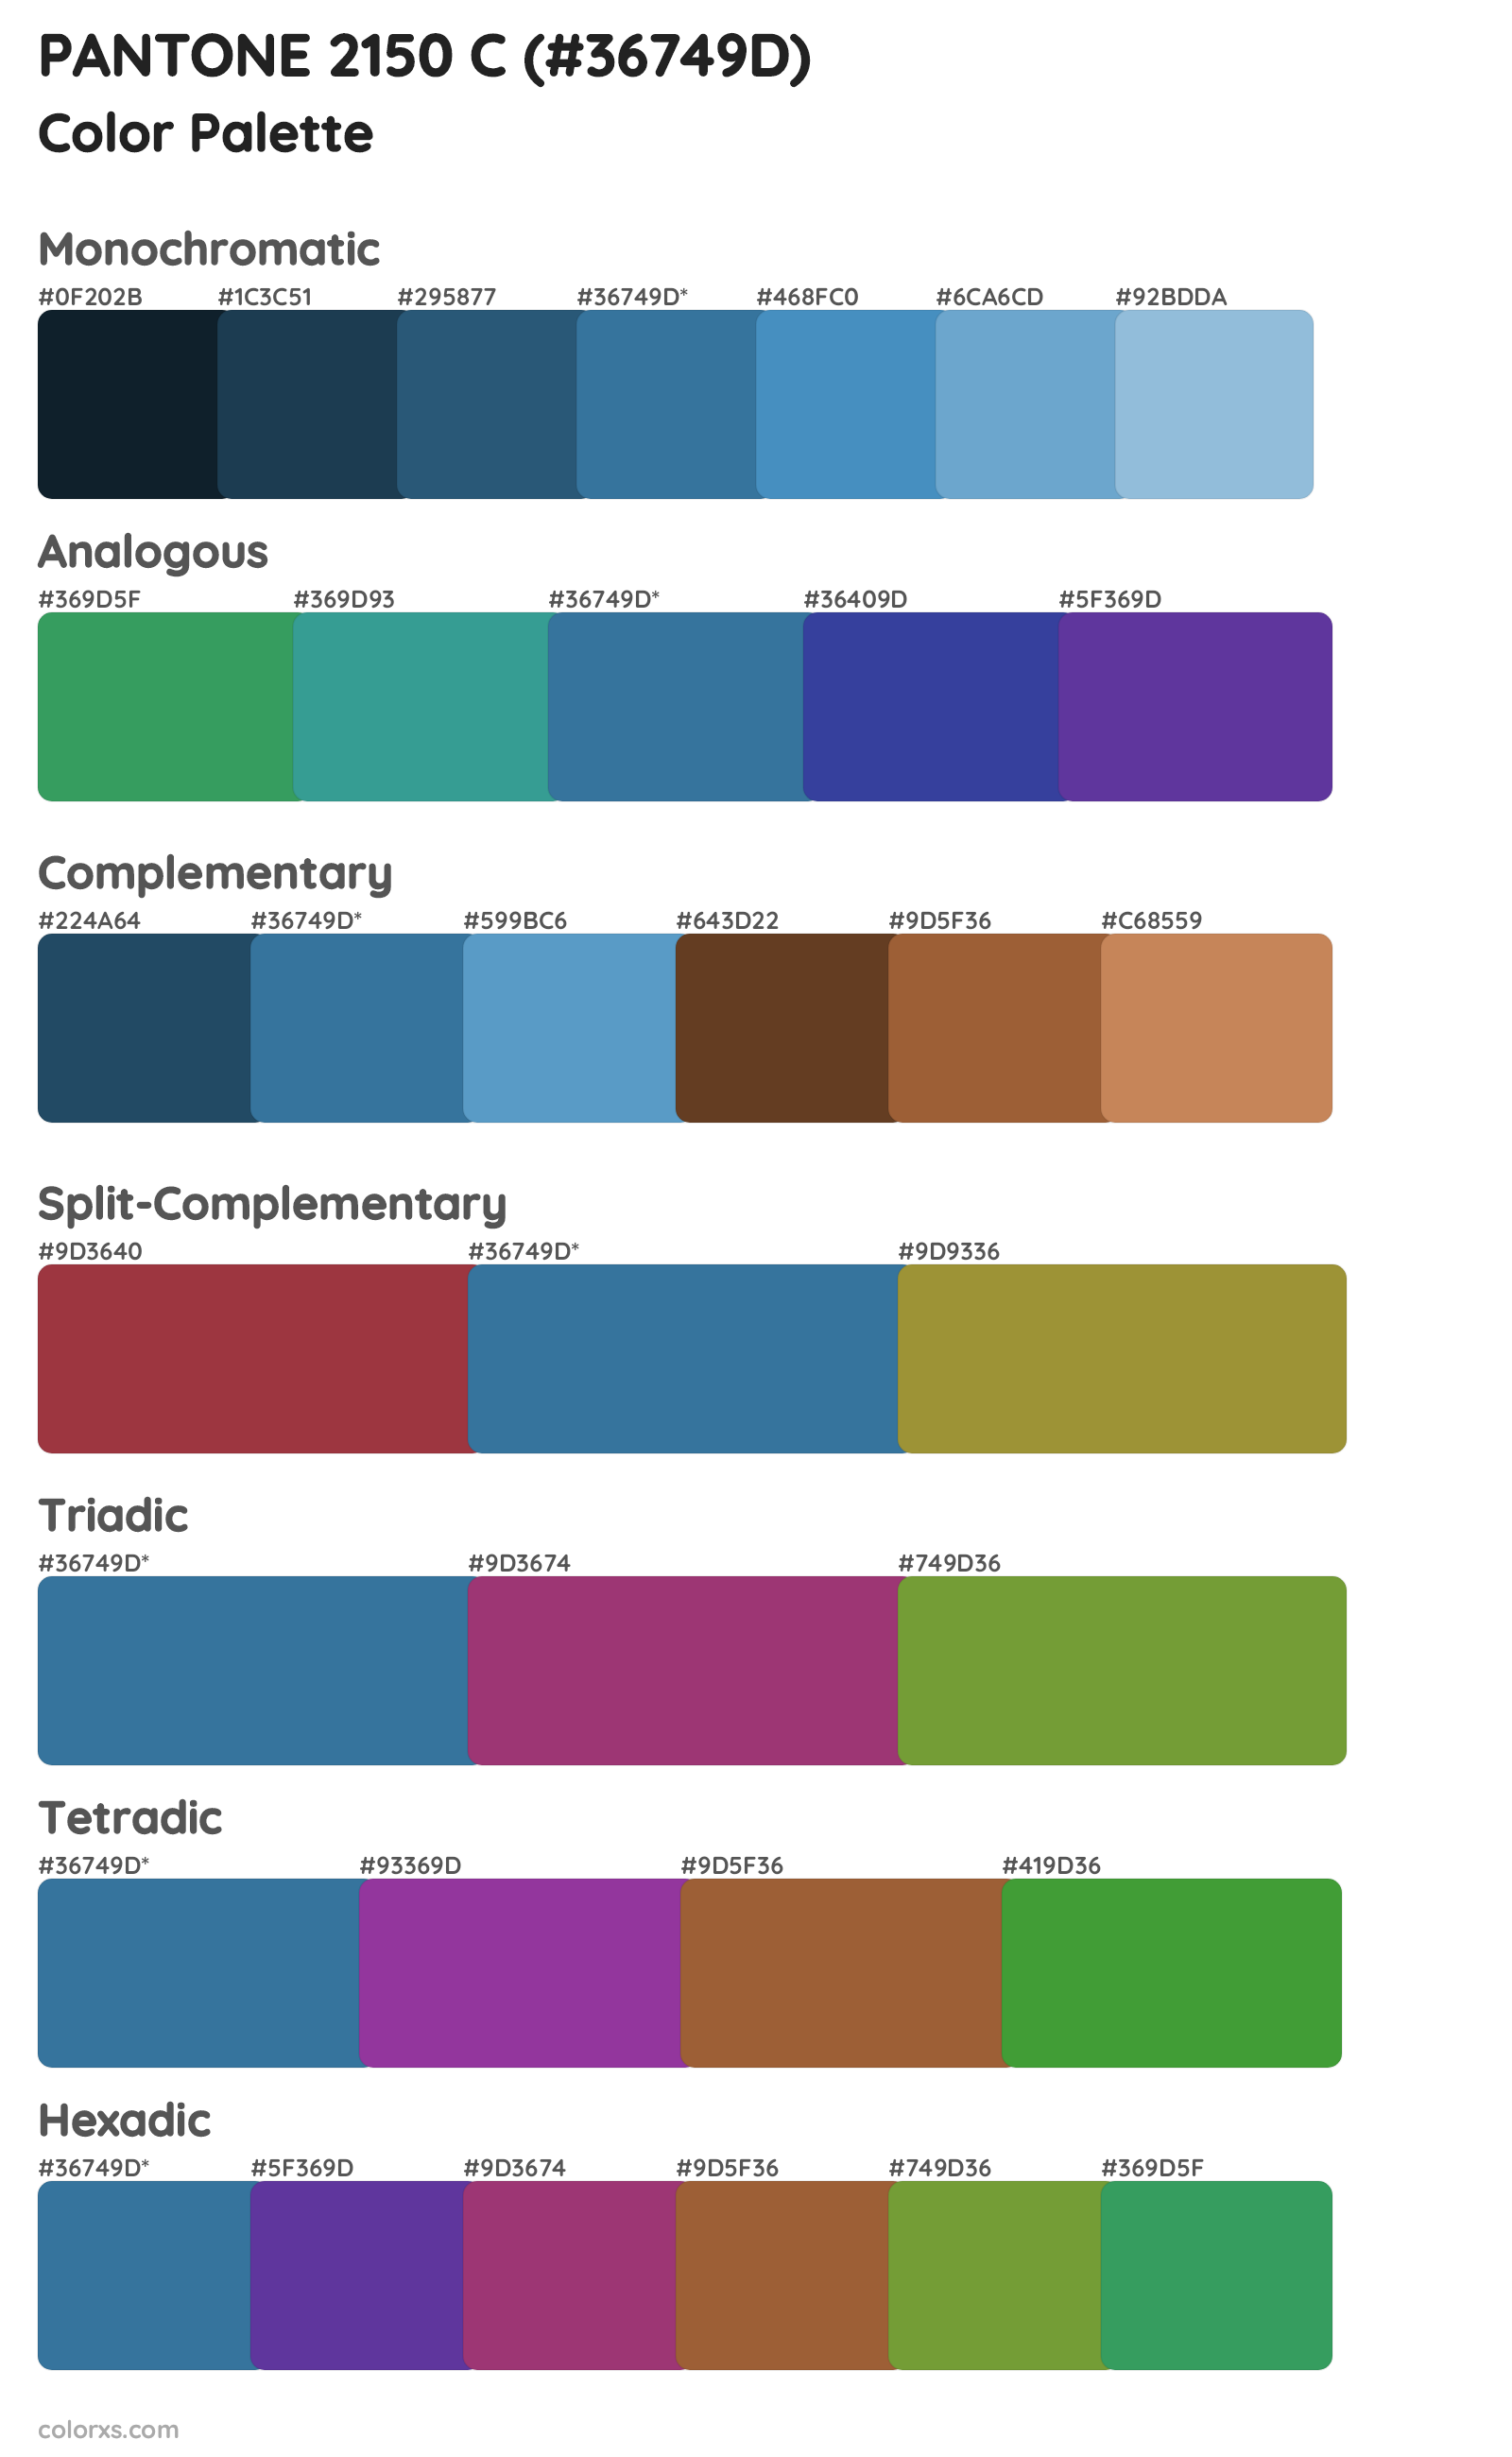 PANTONE 2150 C Color Scheme Palettes